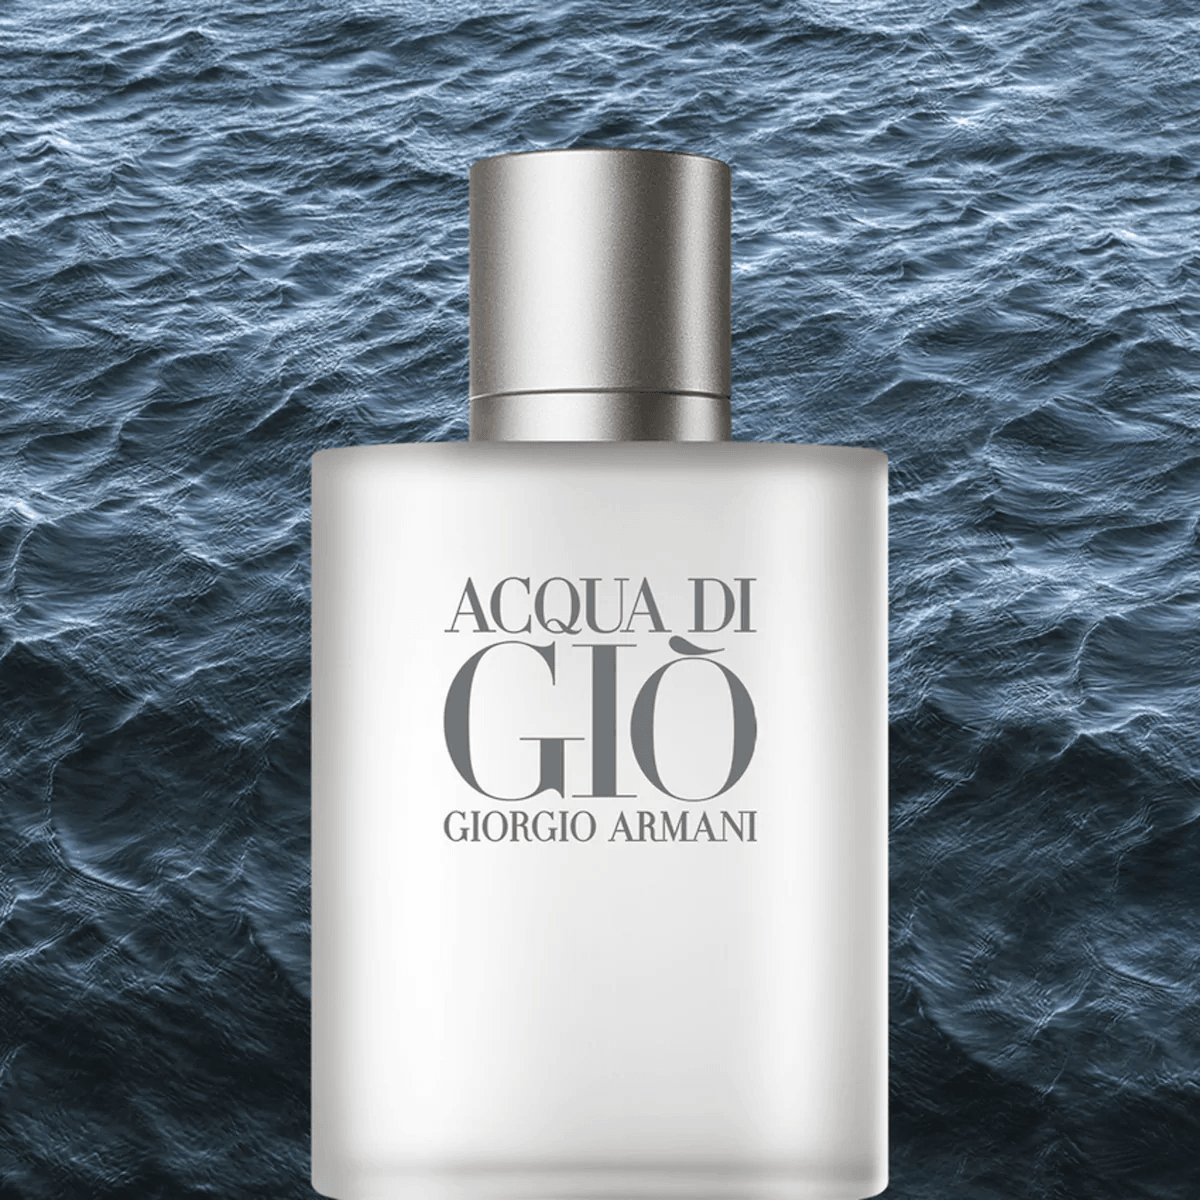 Giorgio Armani Acqua Di Gio EDT - My Perfume Shop Australia